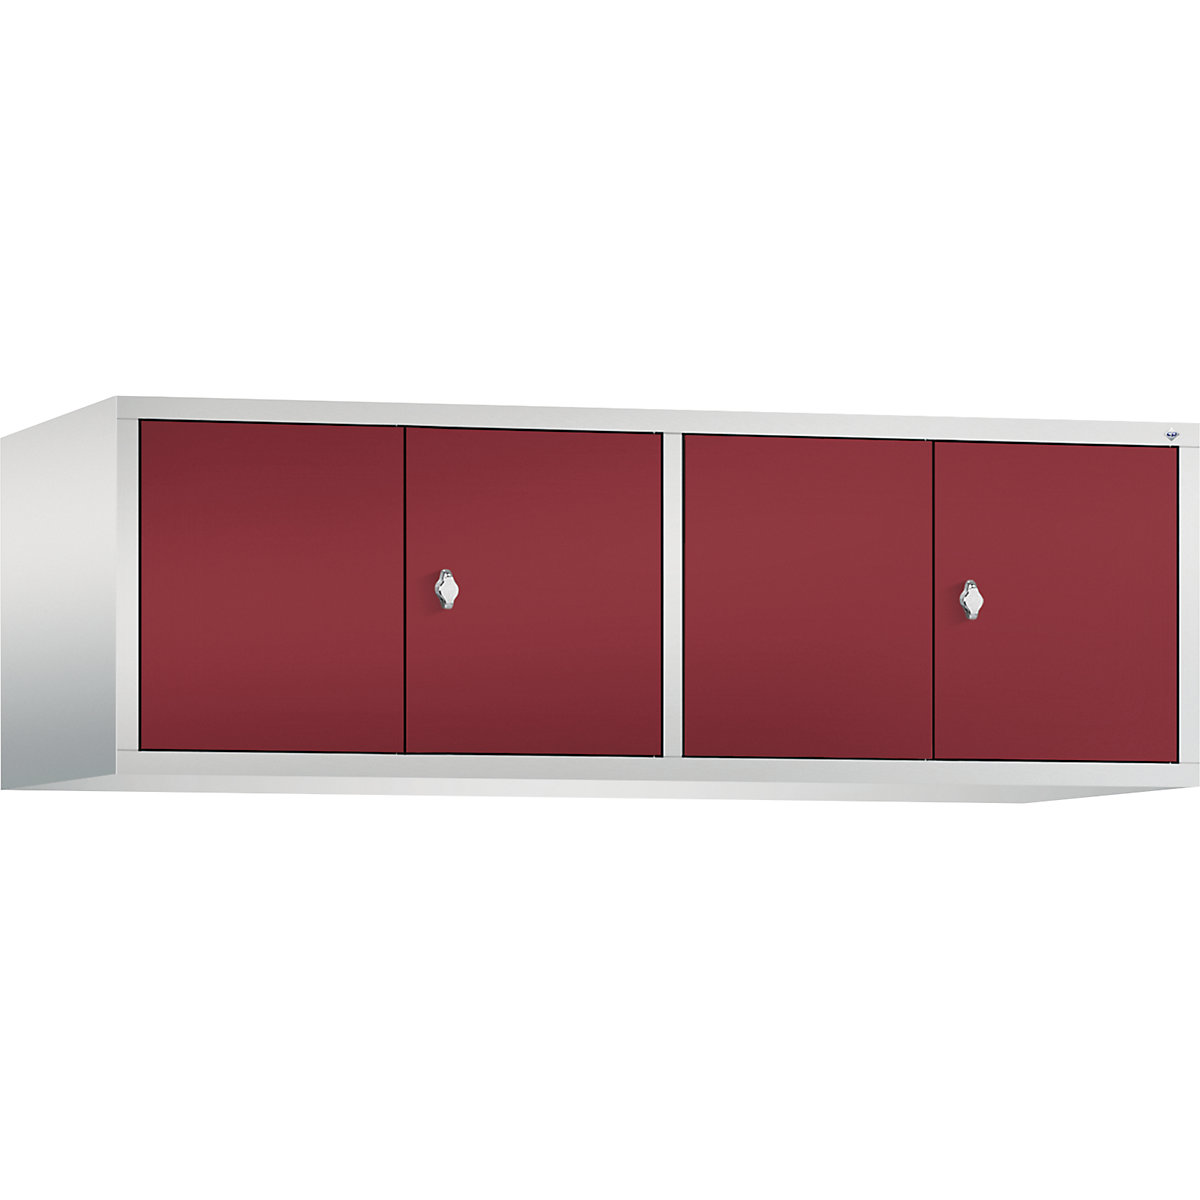 C+P – Altillo CLASSIC, puertas batientes que cierran al ras entre sí, 4 compartimentos, anchura de compartimento 400 mm, gris luminoso / rojo rubí